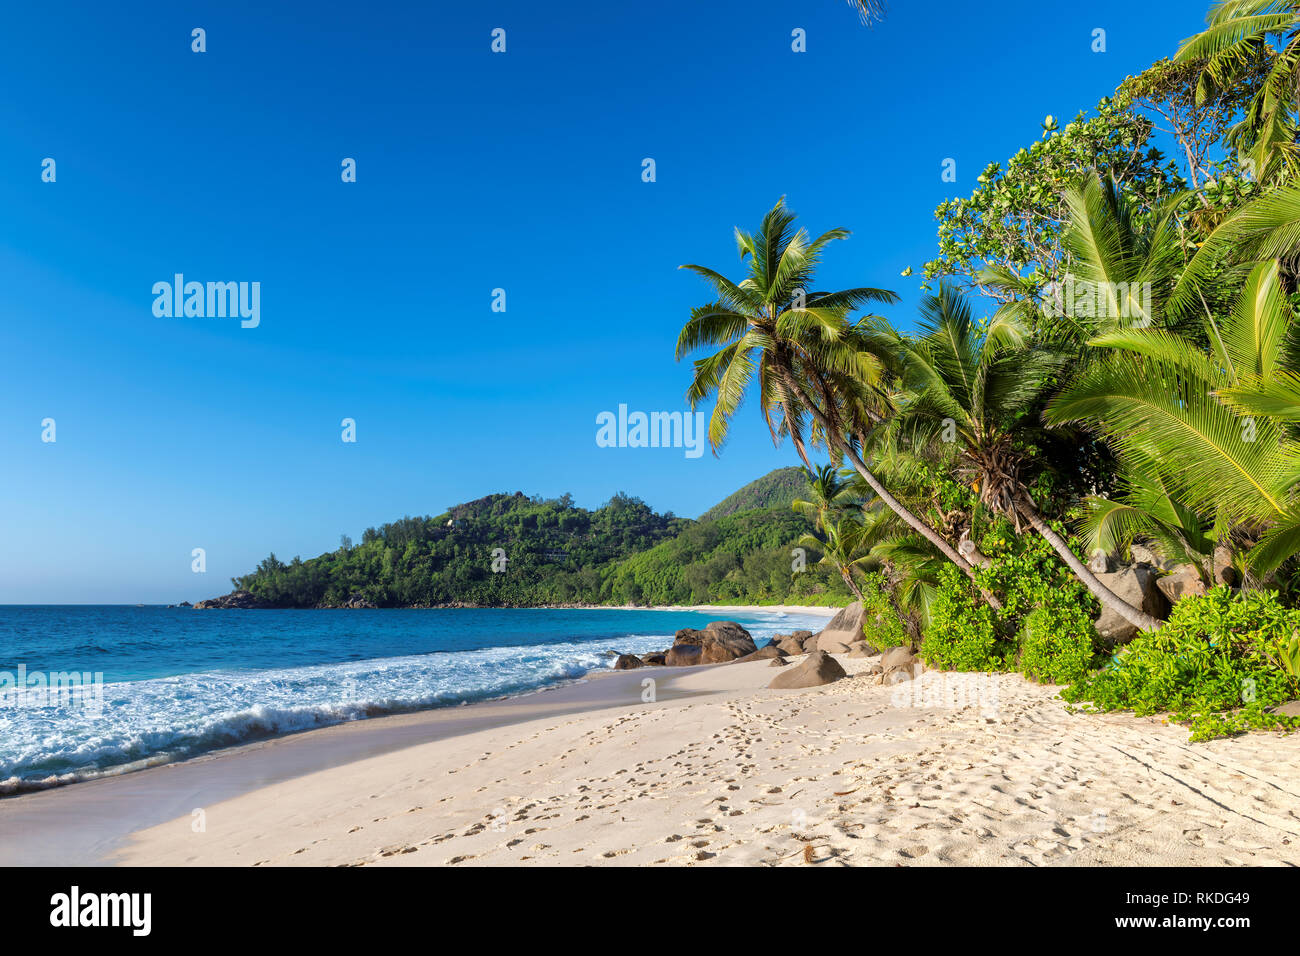 Esotica spiaggia tropicale con sabbia bianca e palme intorno Foto Stock